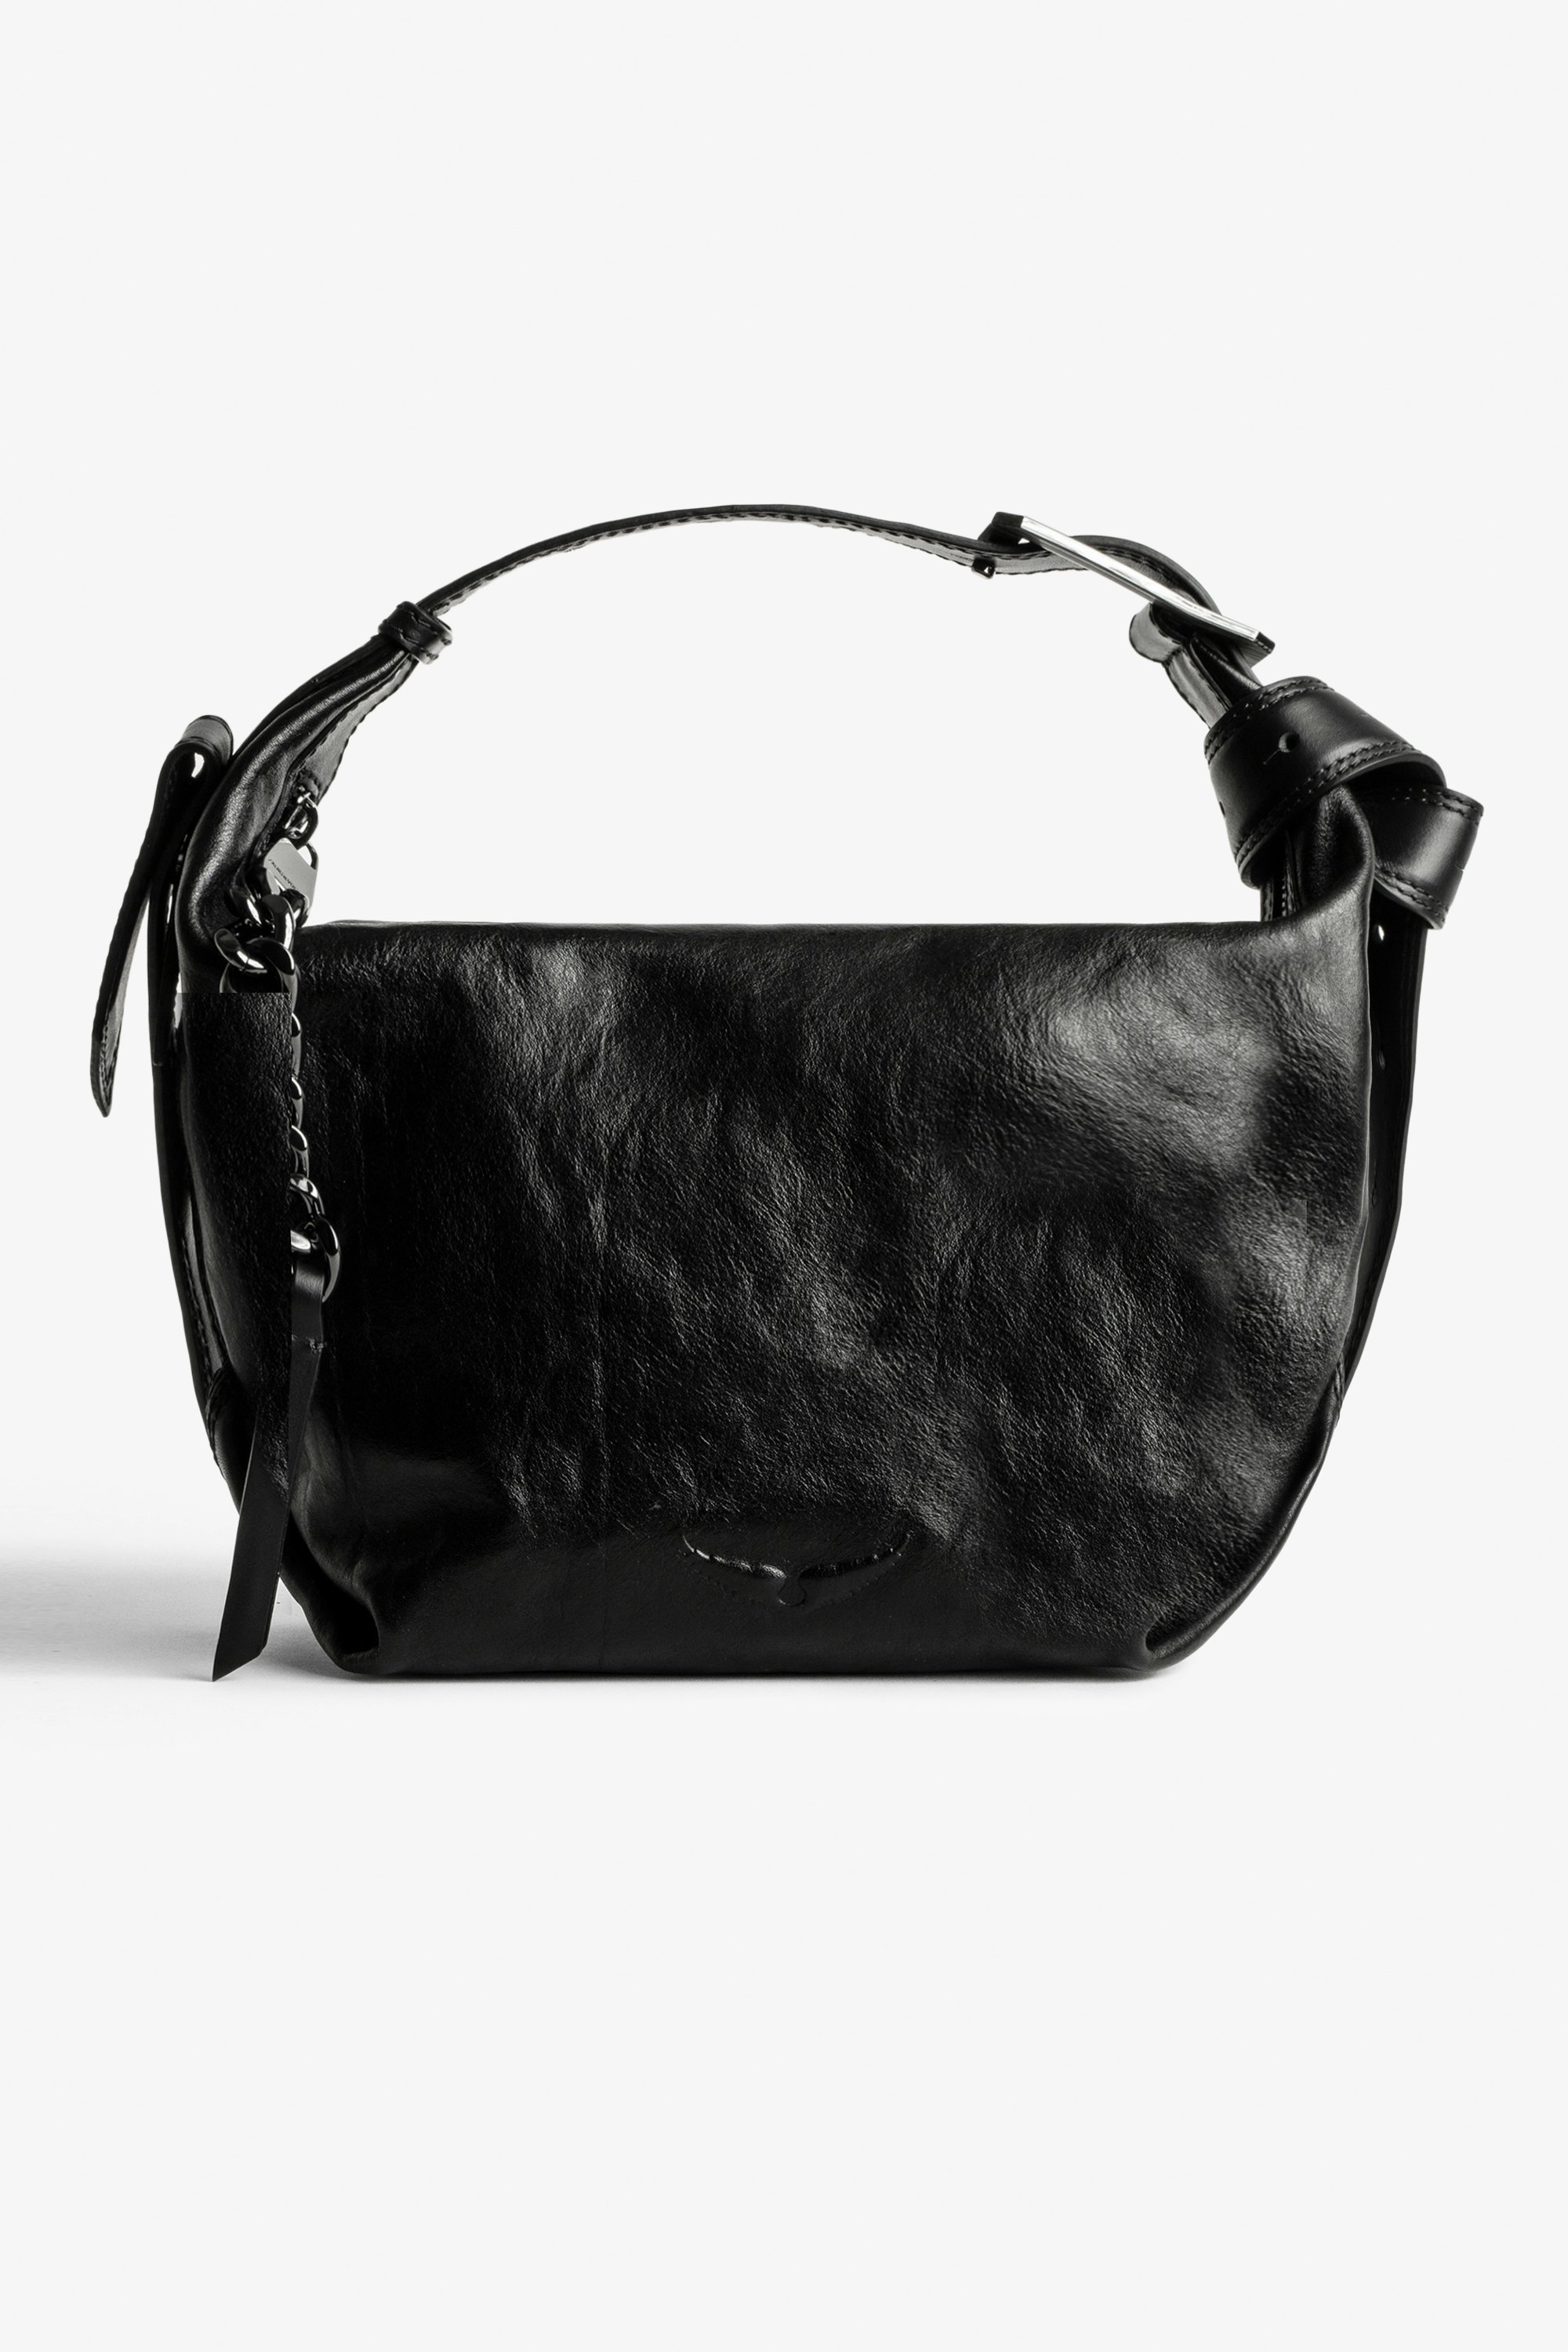 Le Cecilia Bag  - Le Cecilia women’s iconic vegetable-tanned Italian leather bag.